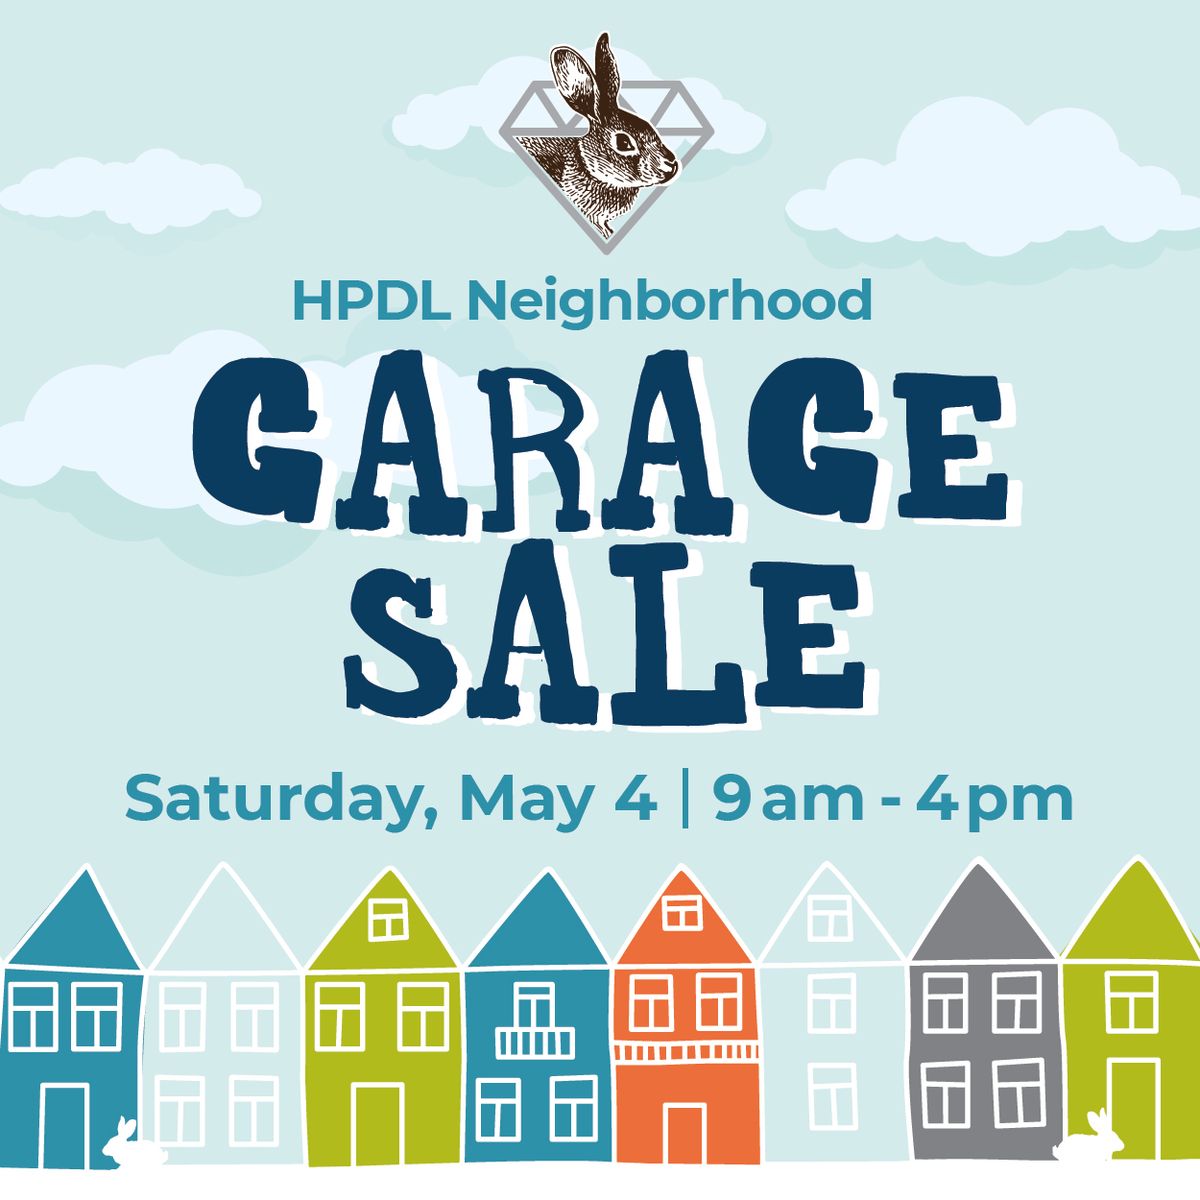 HPDL Neighborhood Garage Sale